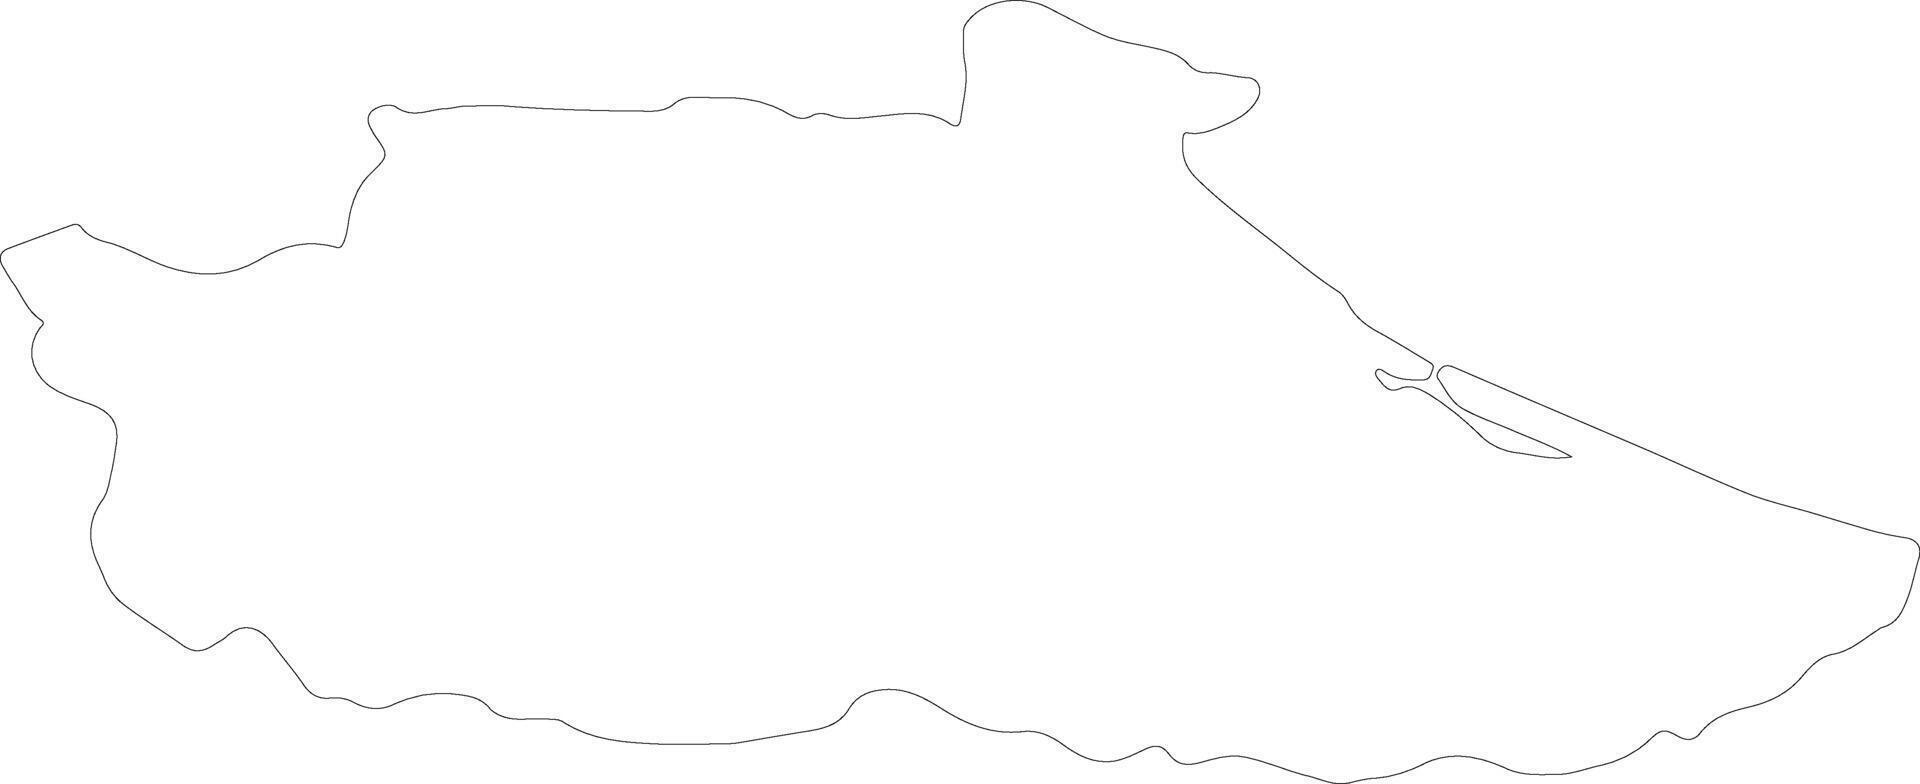 miranda Venezuela contorno mapa vector